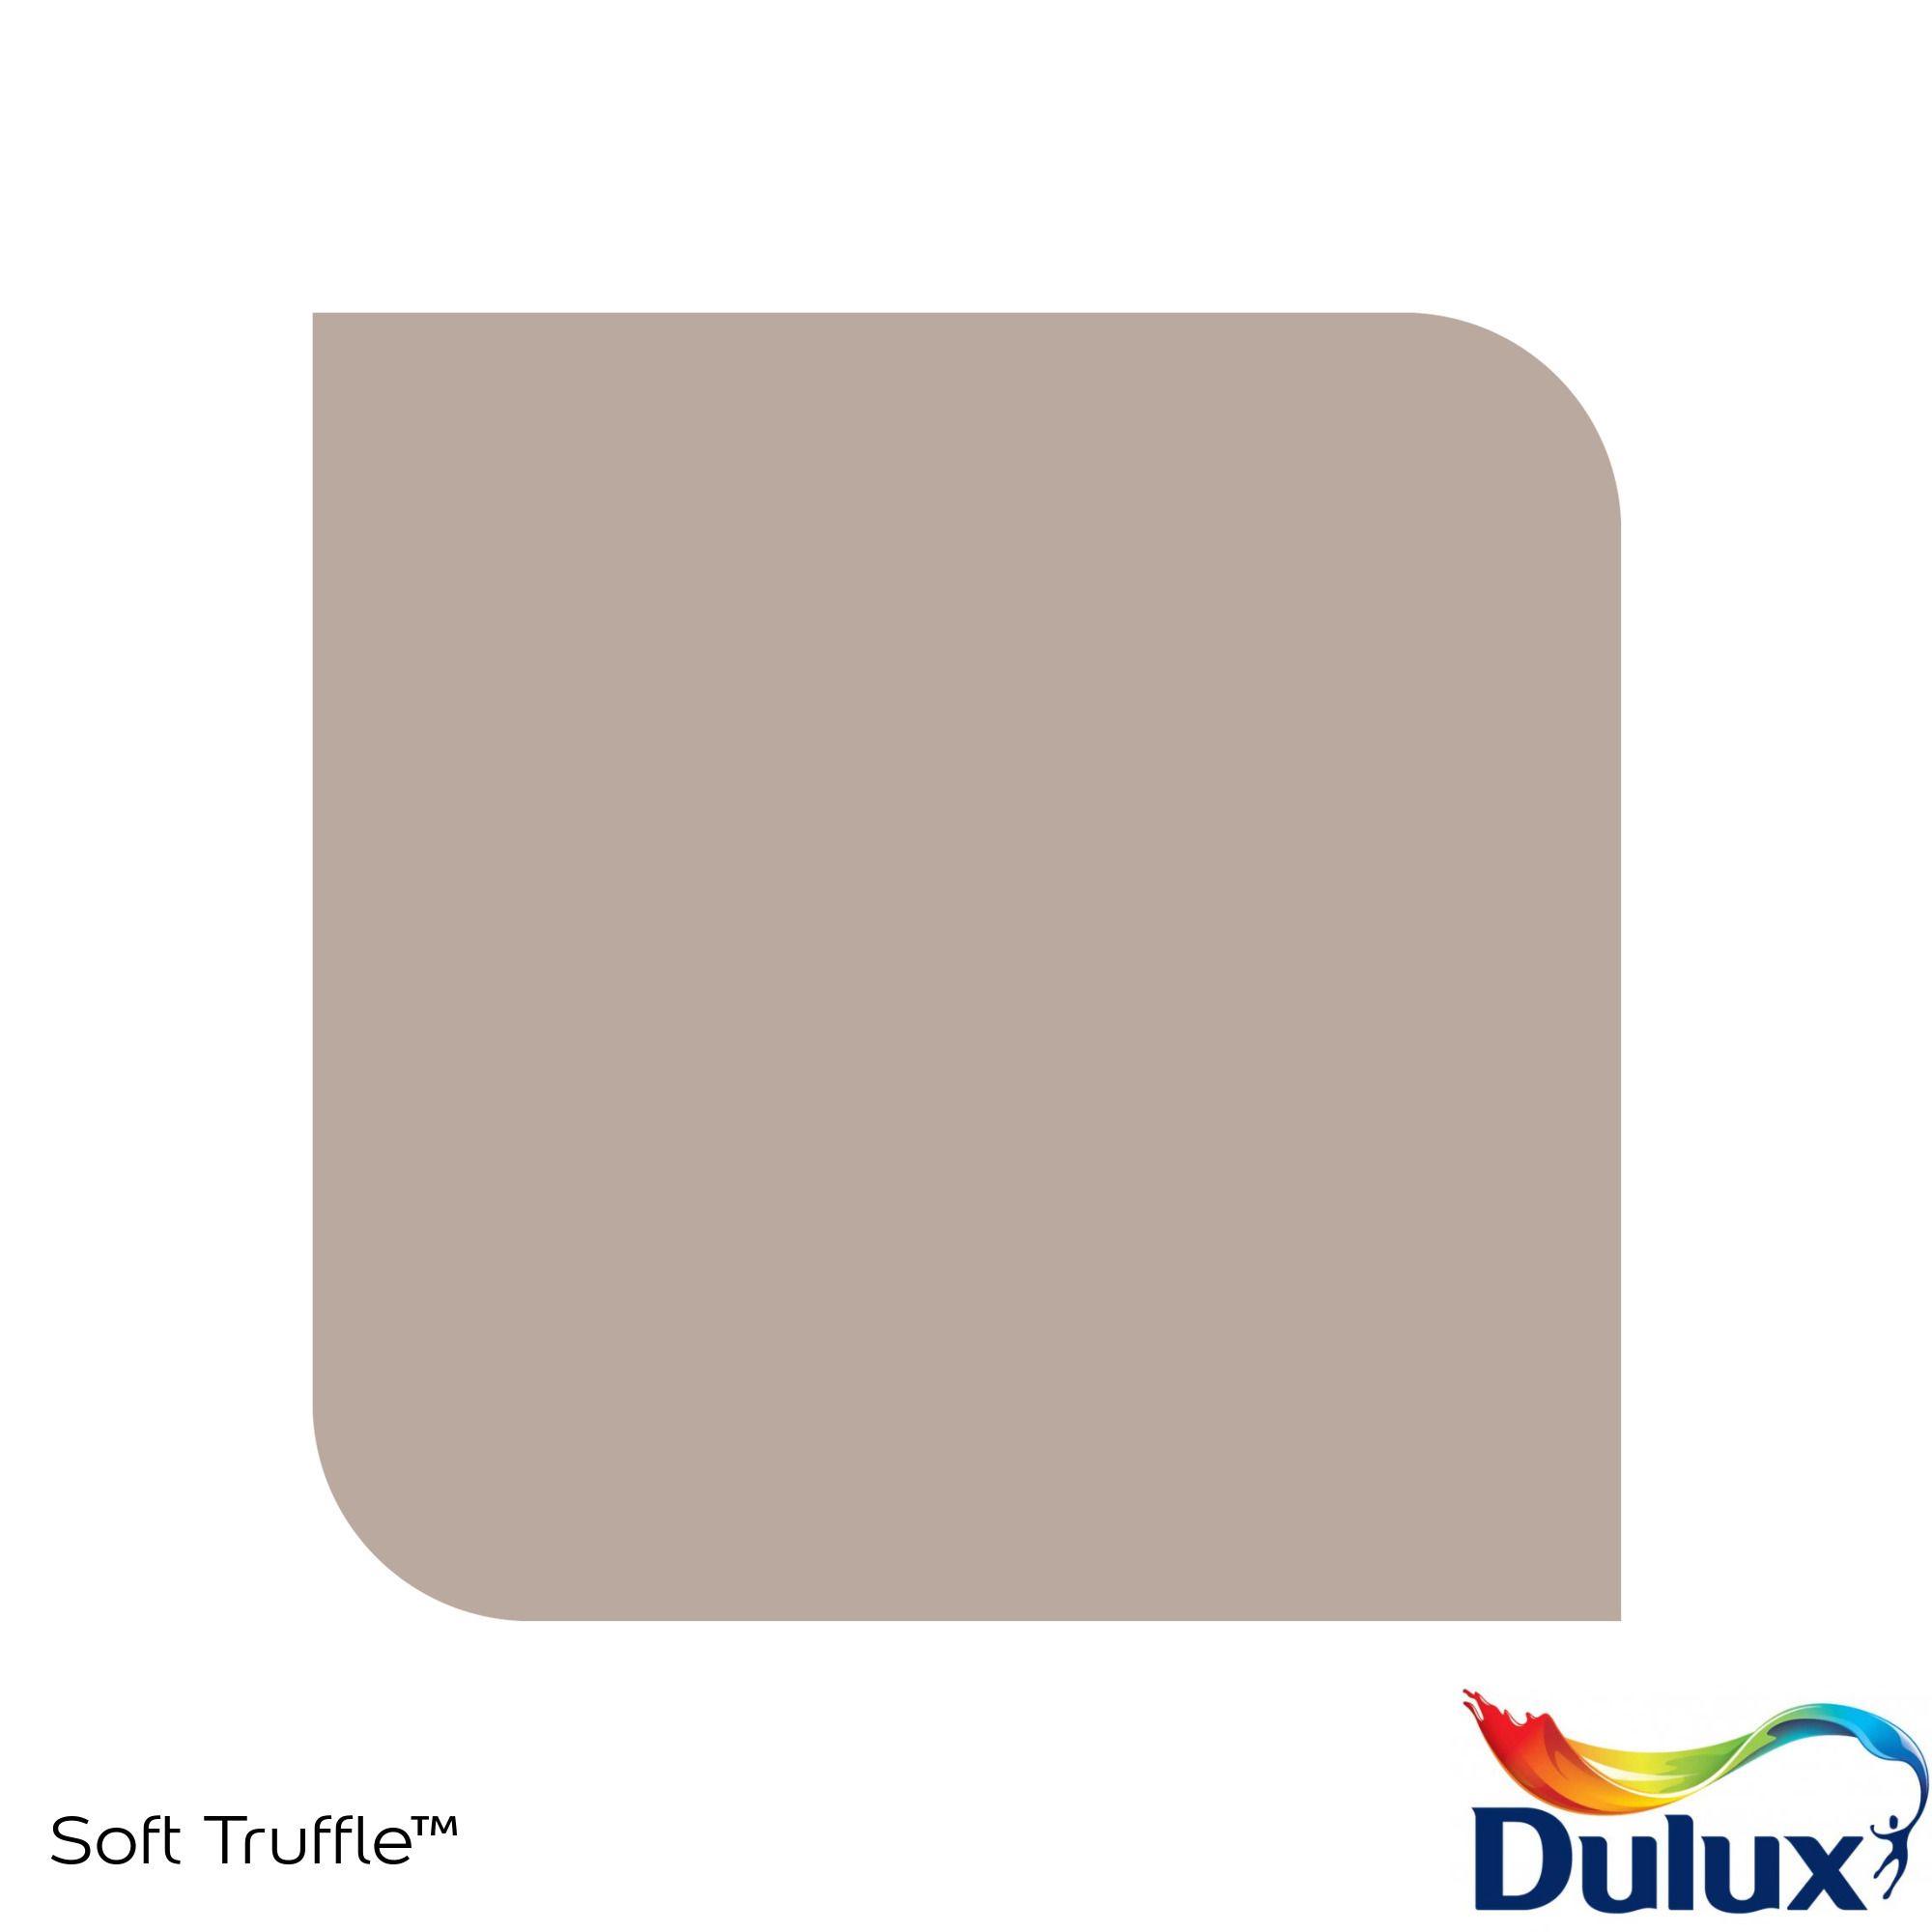 Dulux Standard Soft truffle Matt Emulsion paint, 30ml Tester pot